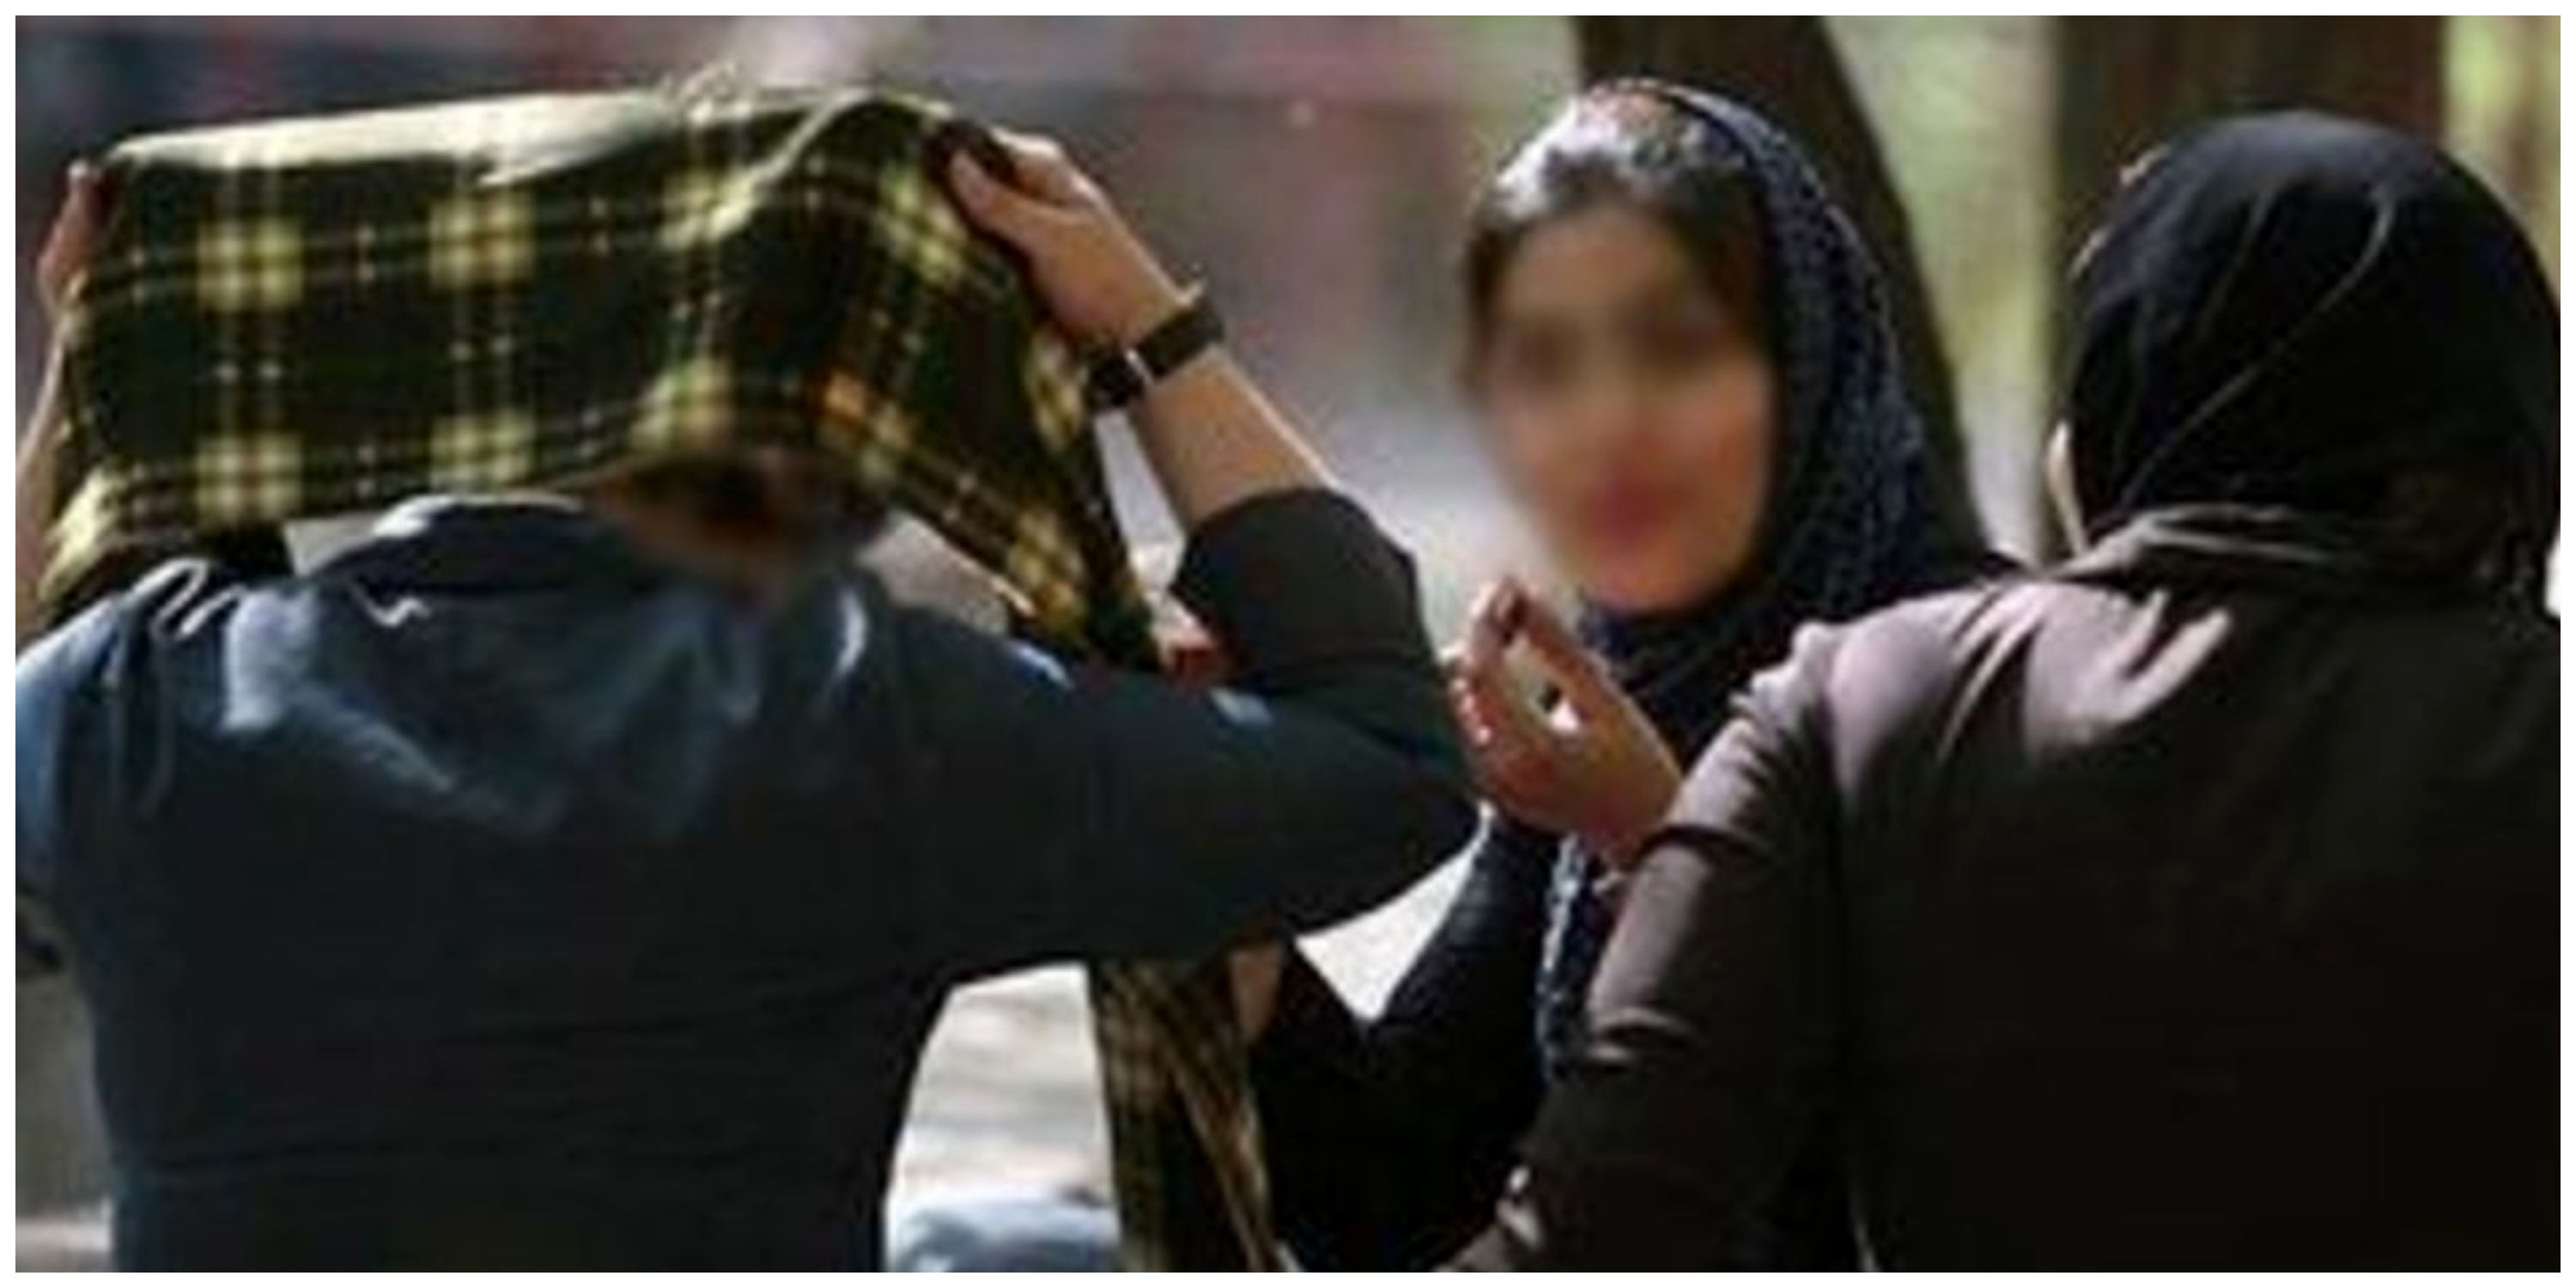 بنر جنجالی حجاب در بازارمشهد سوژه شد+ عکس